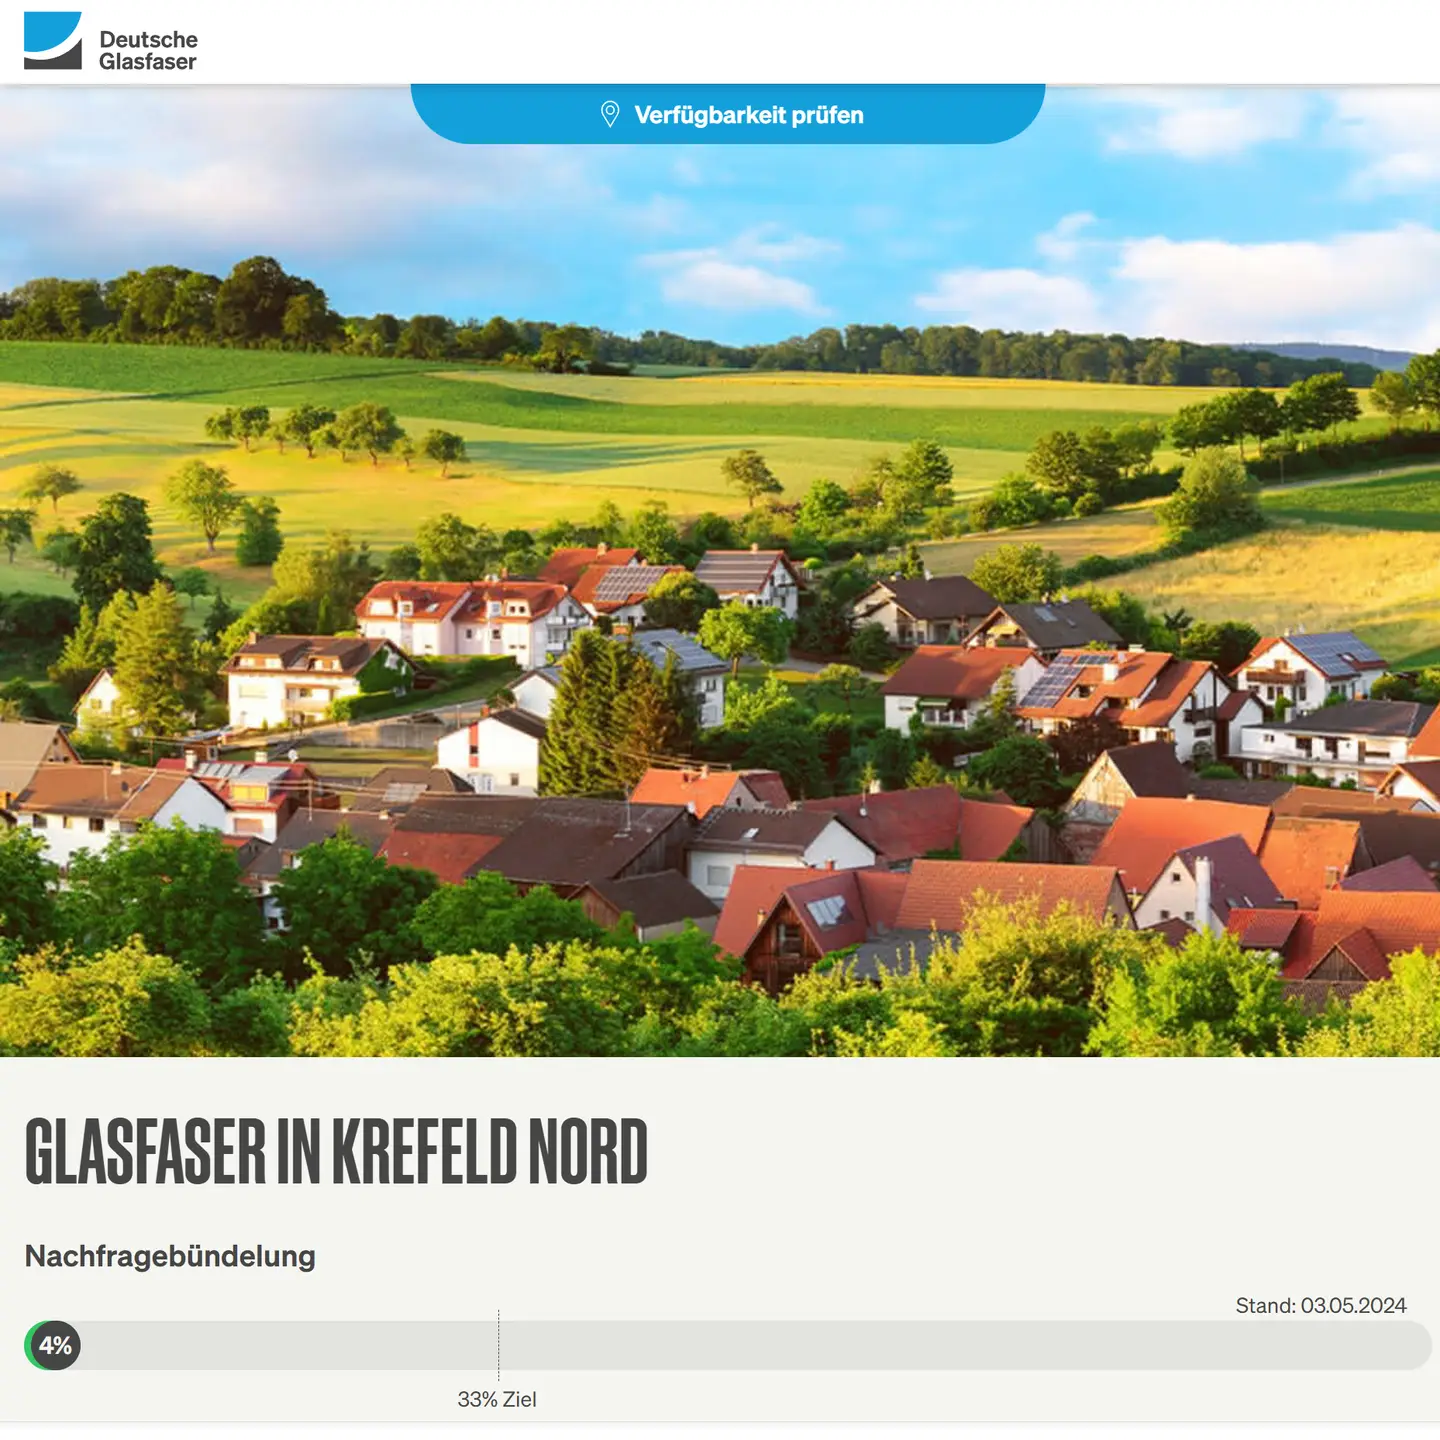 Screenshot von "Deutsche Glasfaser", oben DG Logo, ein Landschaftsbild, Schriftzüge "Glasfaser in Krefeld-Nord", Nachfragebündelung bis 27.7.2024, Anzeige des aktuellen Stand: 4%